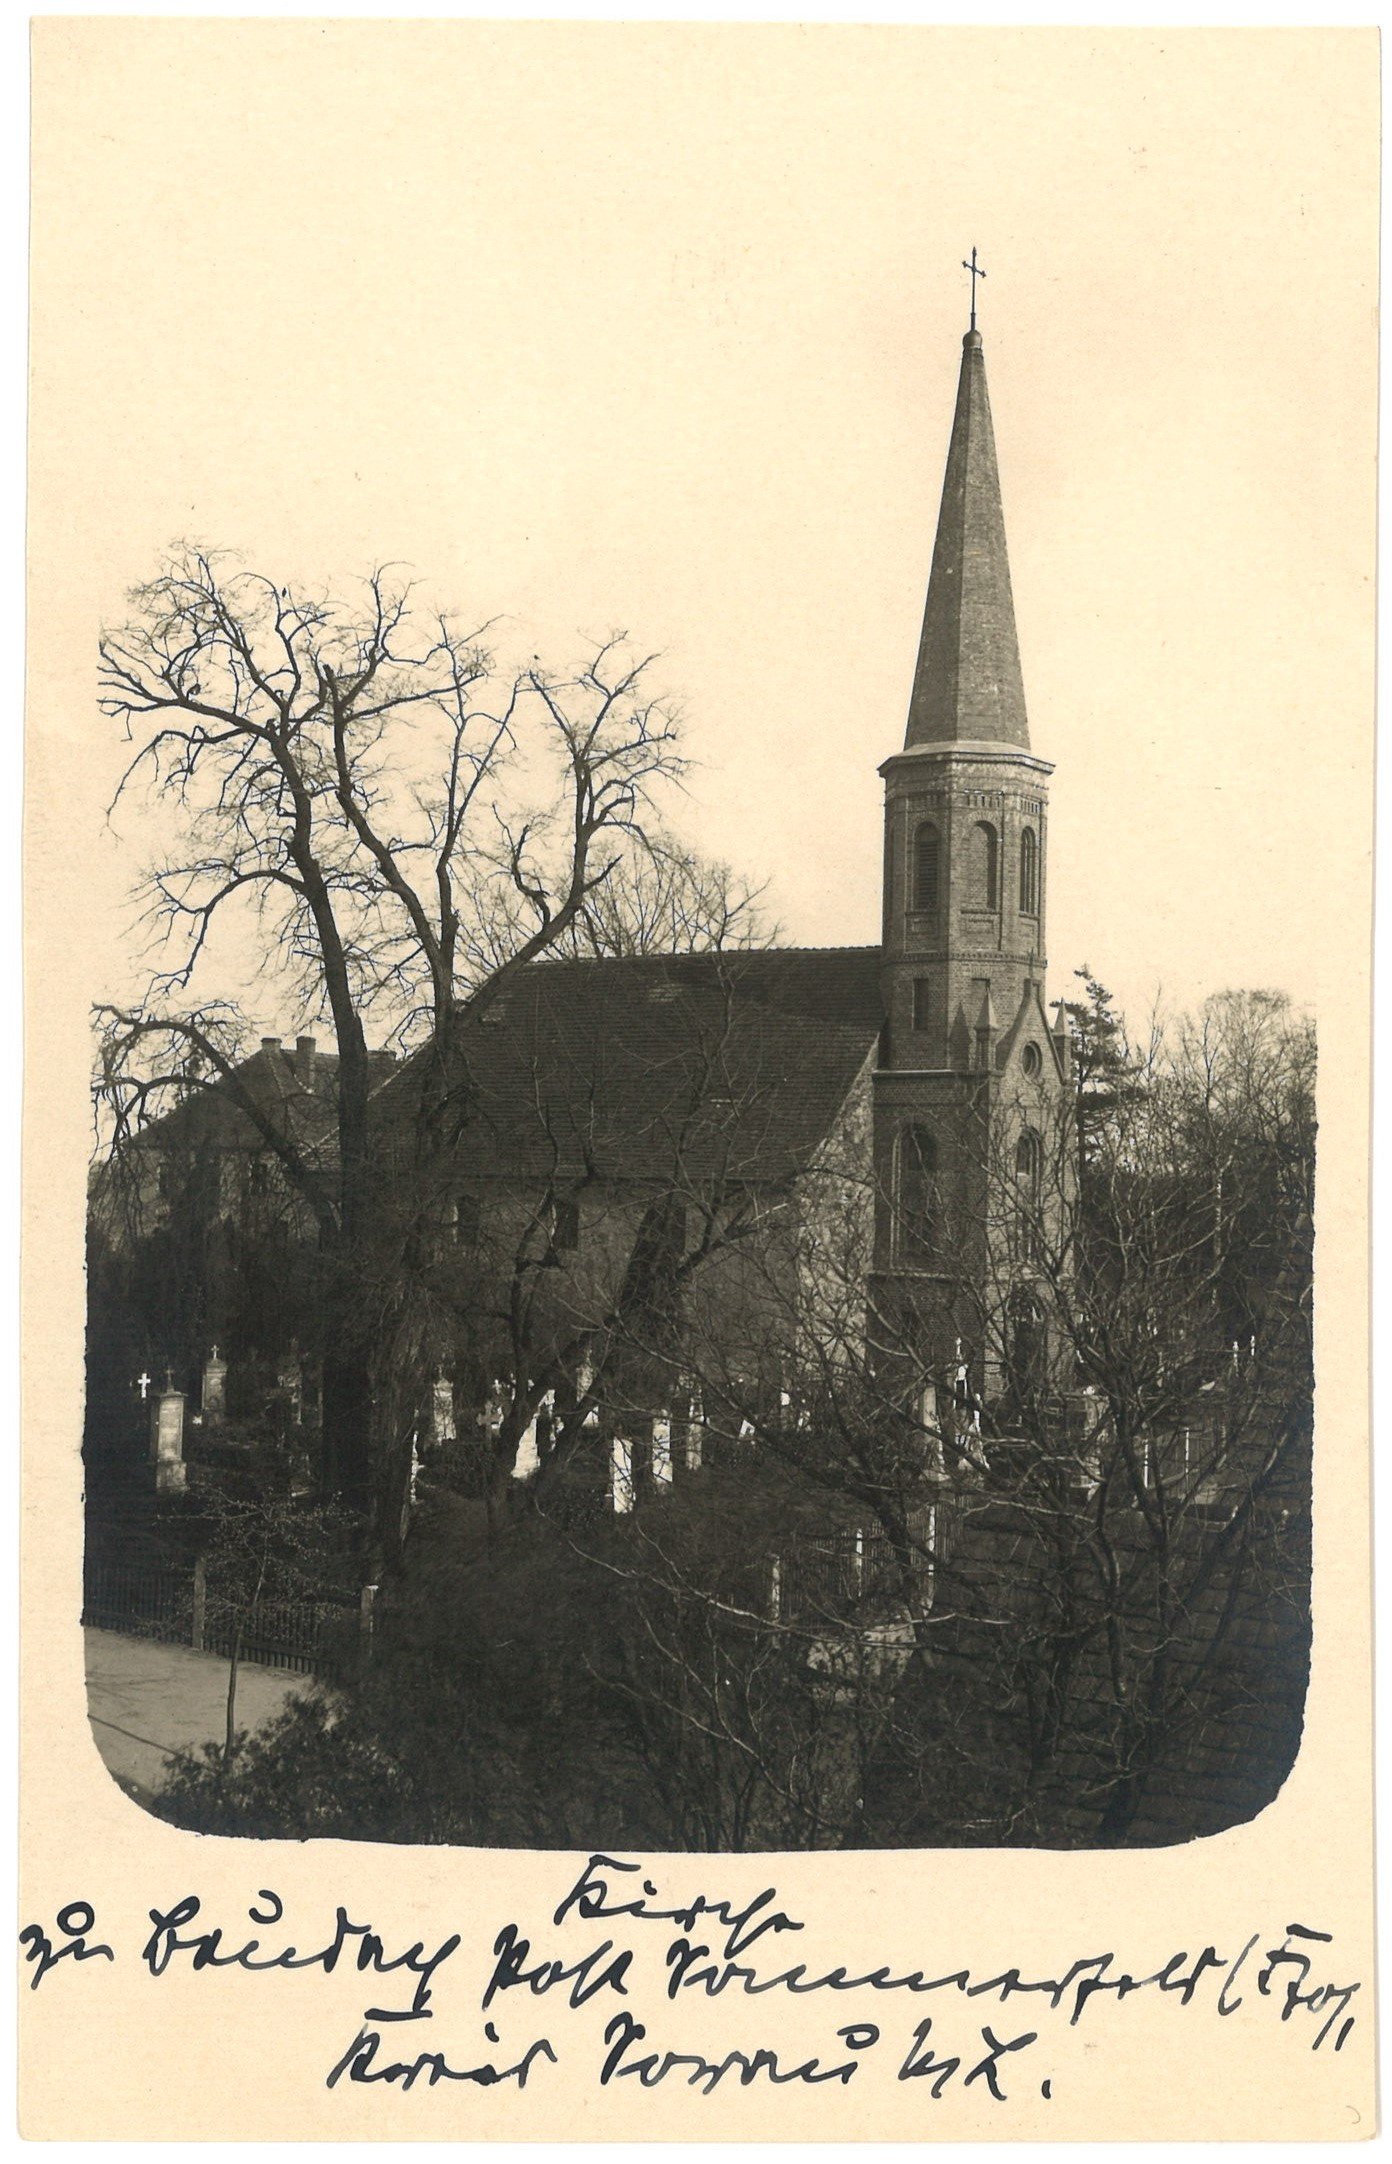 Baudach (Kr. Sorau) / Budziechów: Dorfkirche von Nordwesten (Landesgeschichtliche Vereinigung für die Mark Brandenburg e.V., Archiv CC BY)